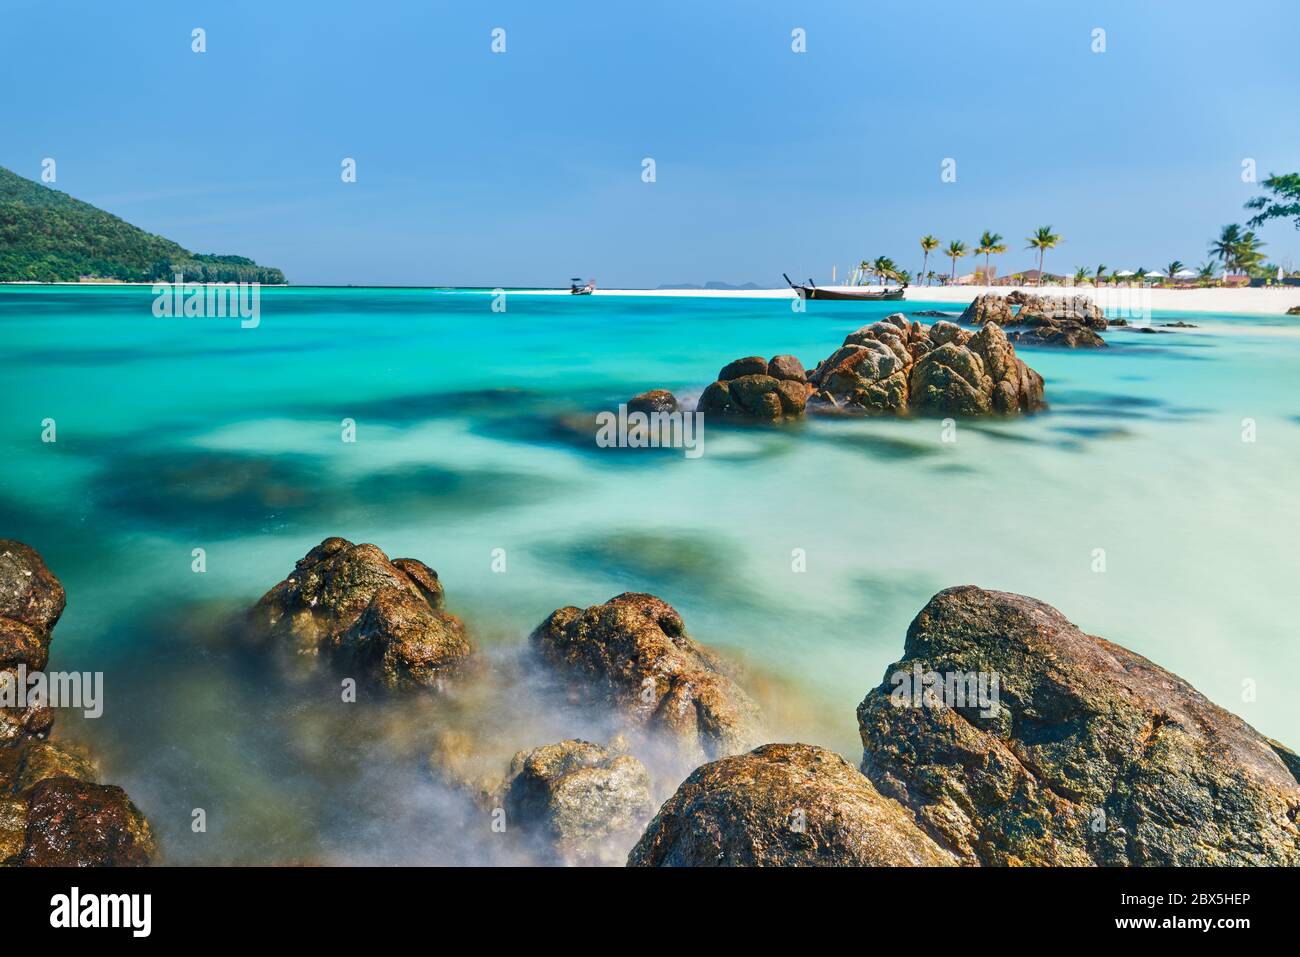 Das türkisfarbene Meer auf der tropischen Insel. Landschaft, Urlaub, Sommer Reisekonzept Stockfoto